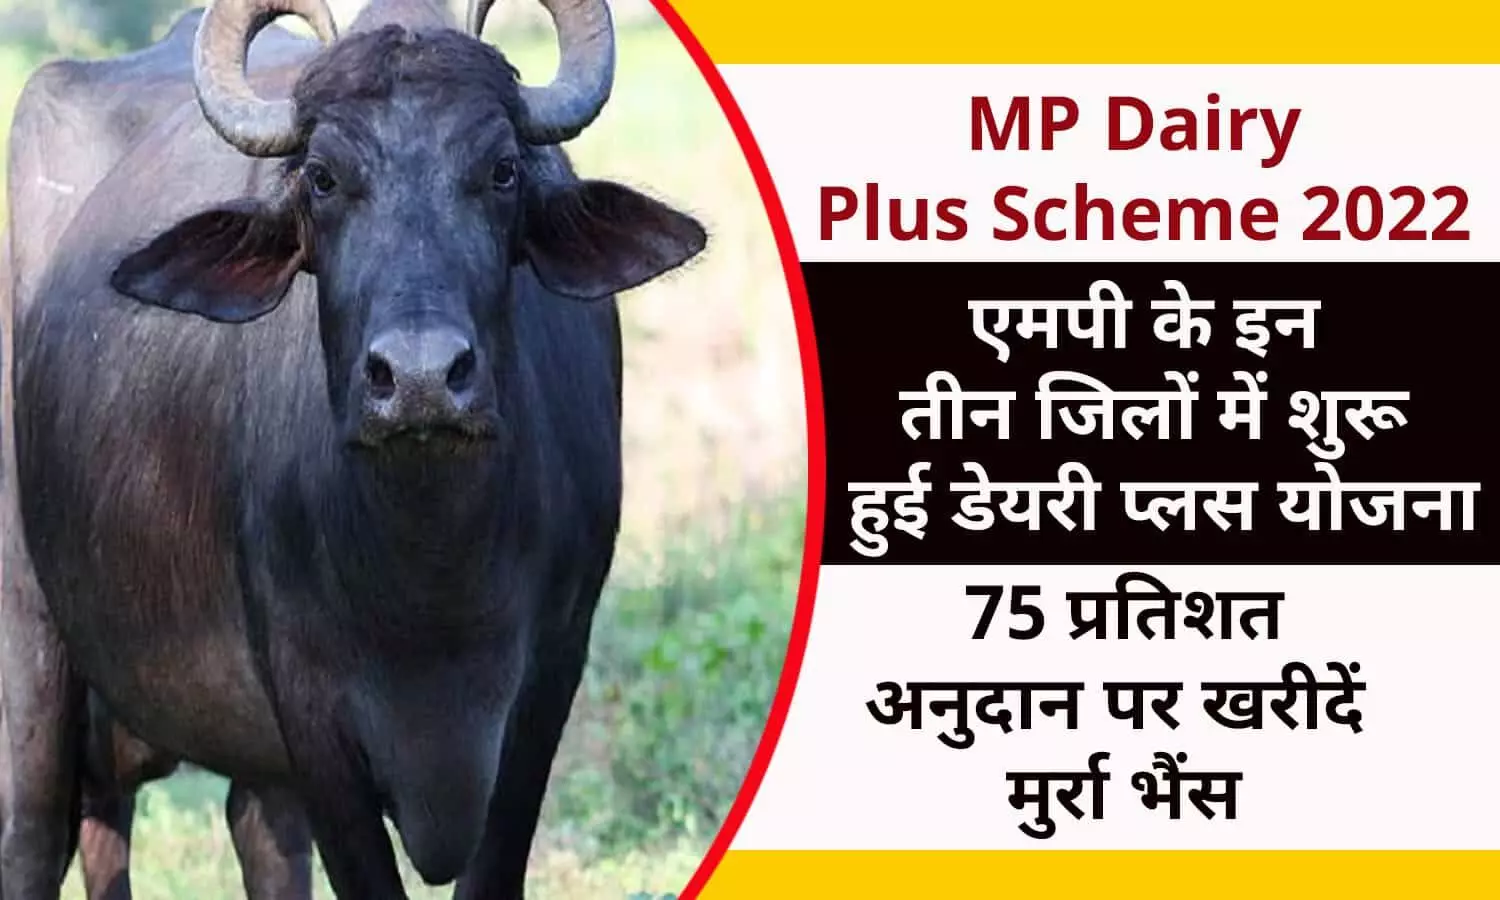 MP Dairy Plus Scheme 2022